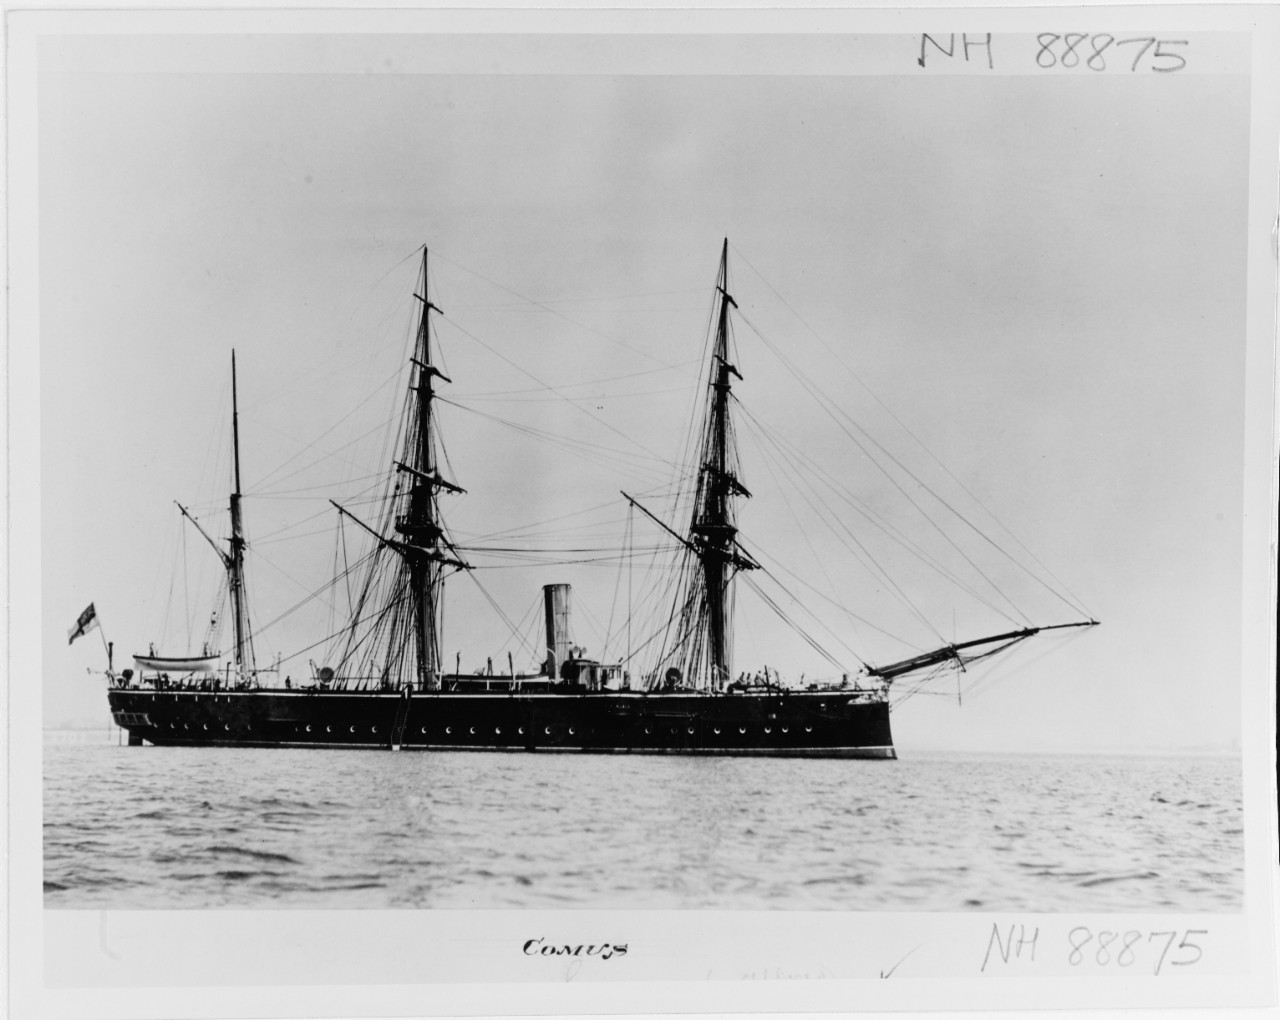 COMUS (British protected cruiser, 1878-1904)